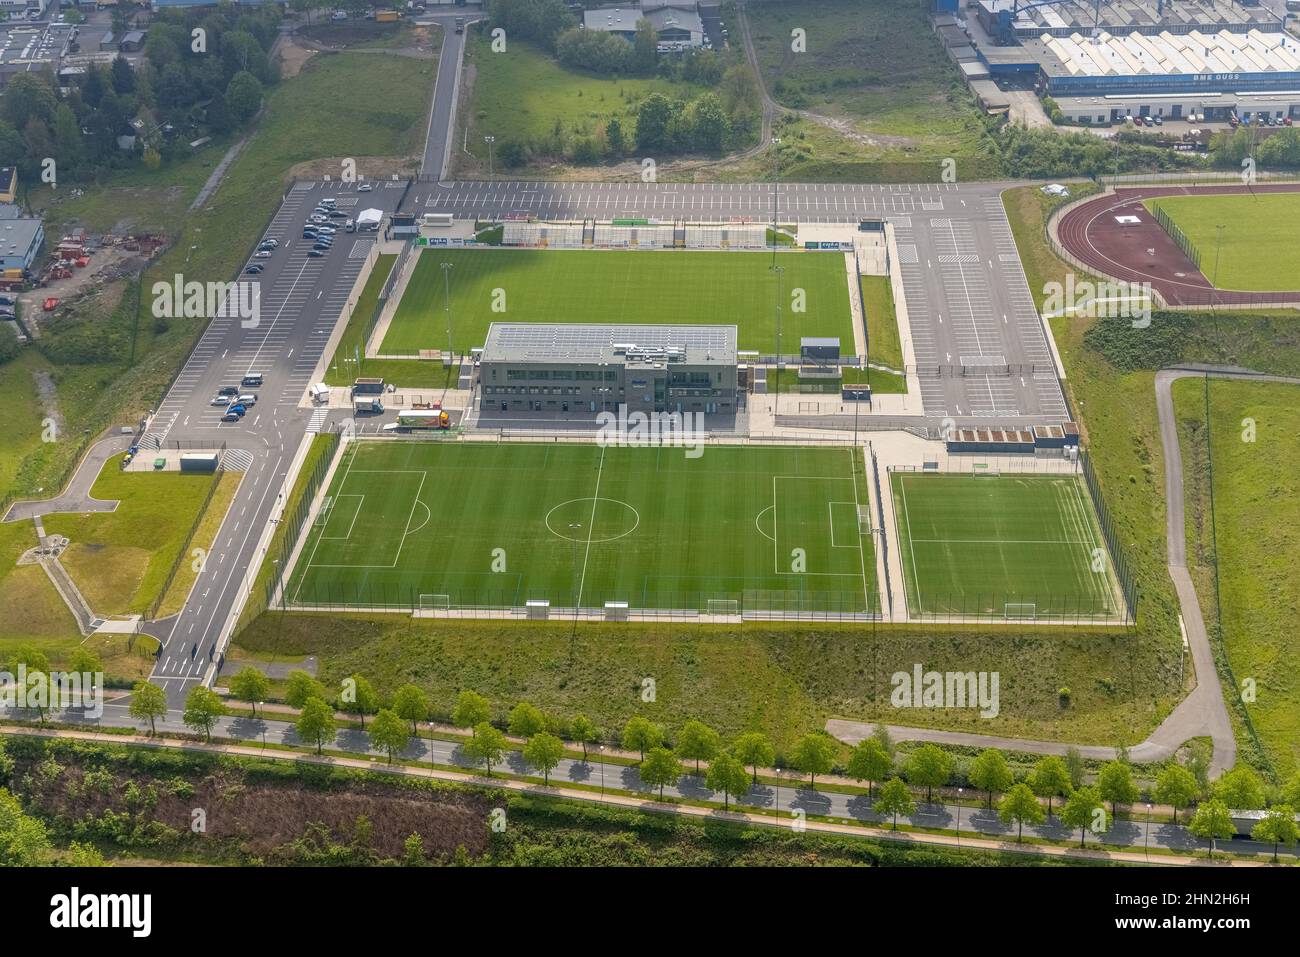 Foto aerea, stazione di prova rapida Corona presso lo stadio della prima lega, EMKA Sportzentrum Velbert, Velbert, zona della Ruhr, Renania settentrionale-Vestfalia, Germania, Foto Stock